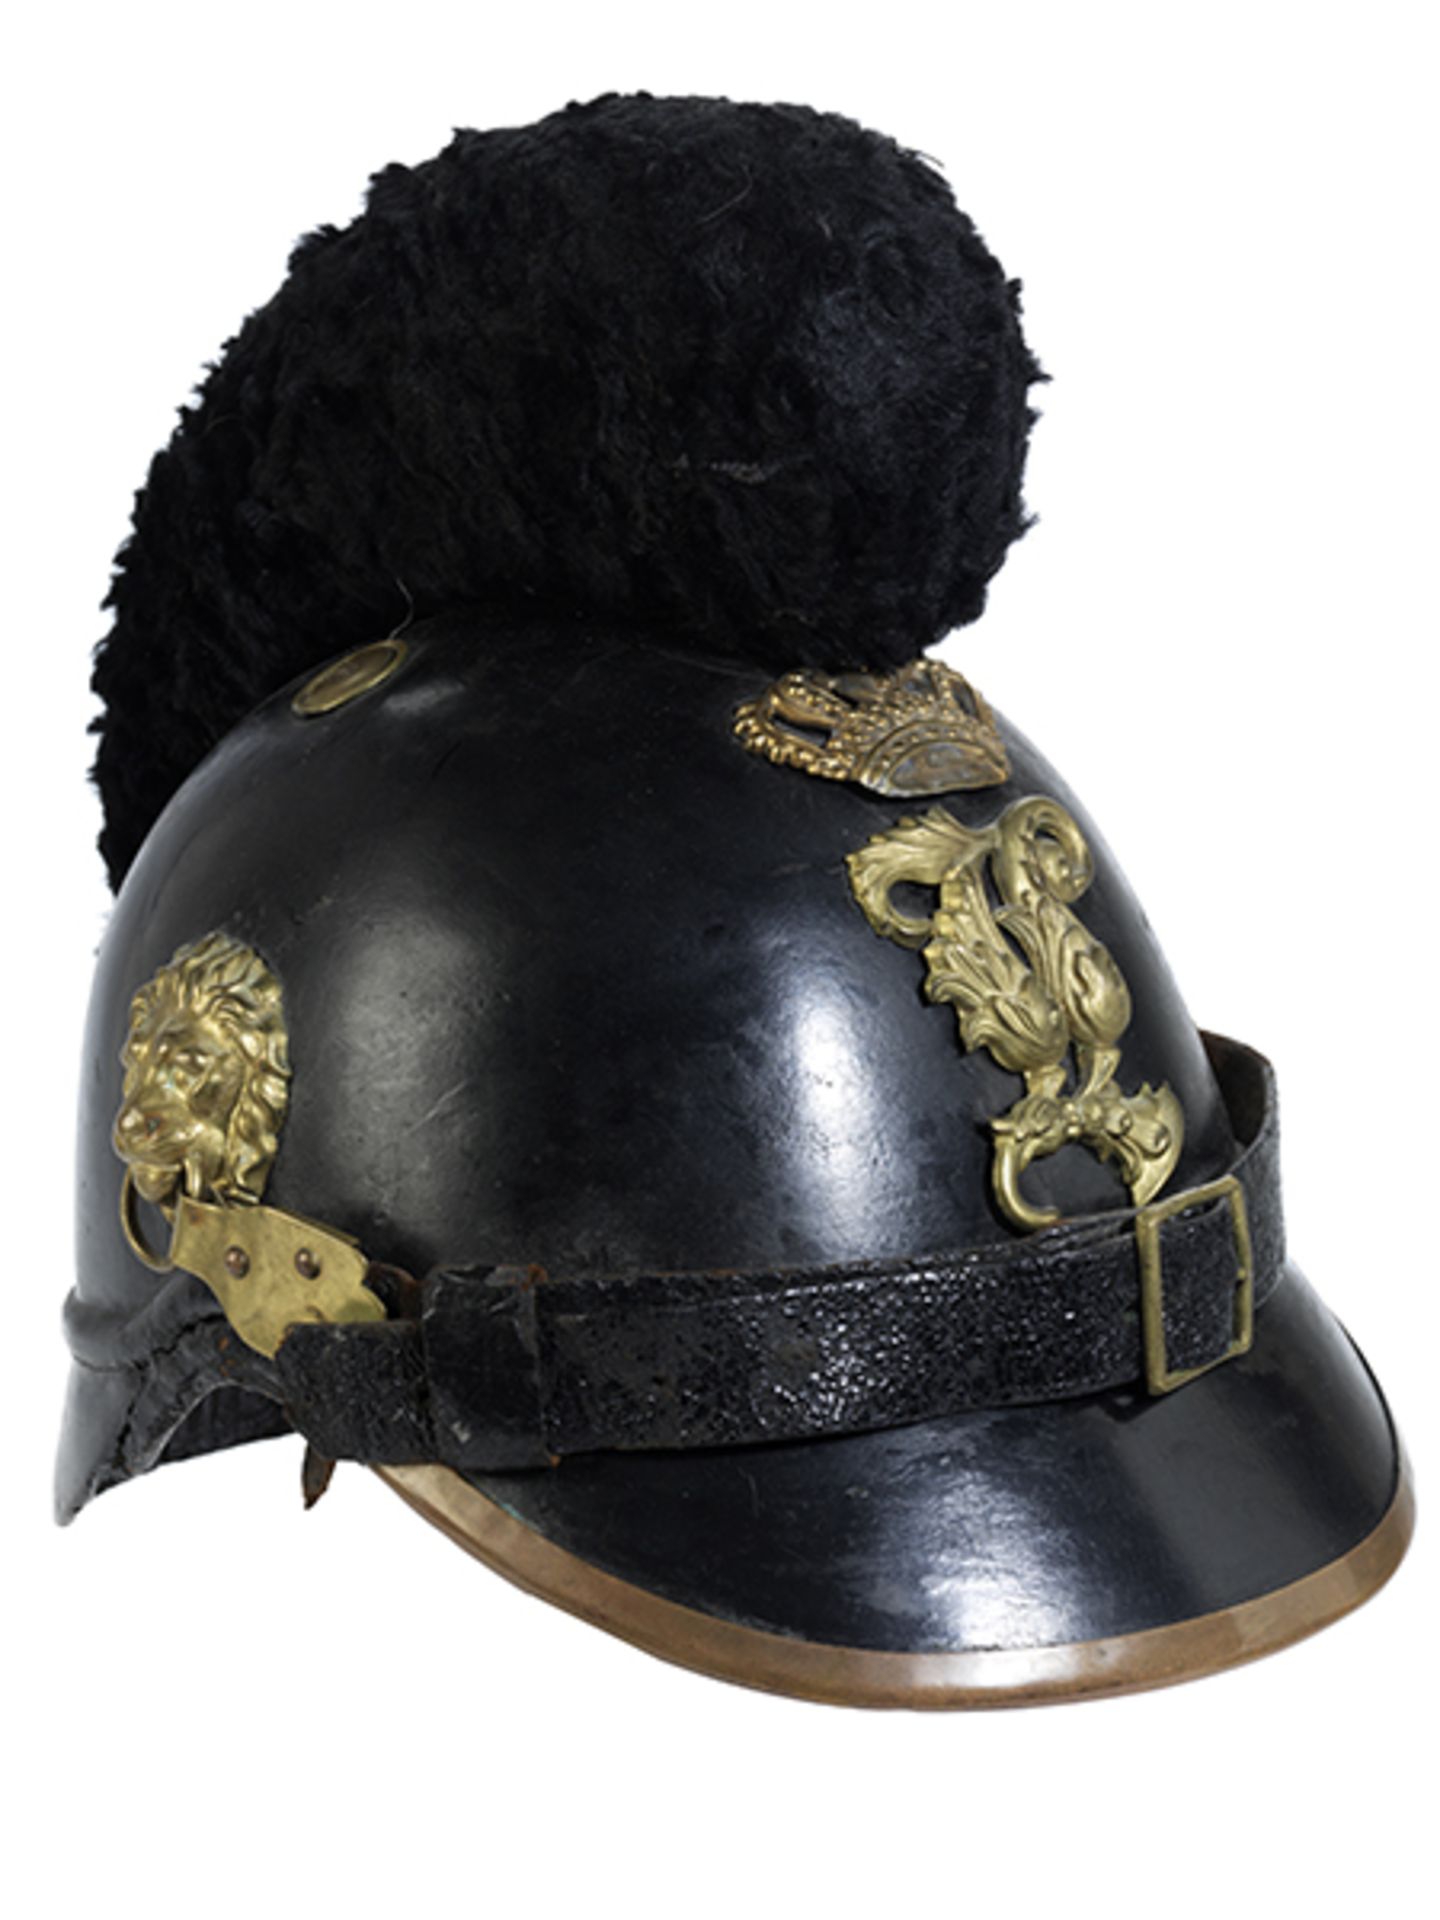 Bayerischer Helm Bayern, 19. Jahrhundert. Gepresstes und lackiertes Leder, Lederband. Seitliche